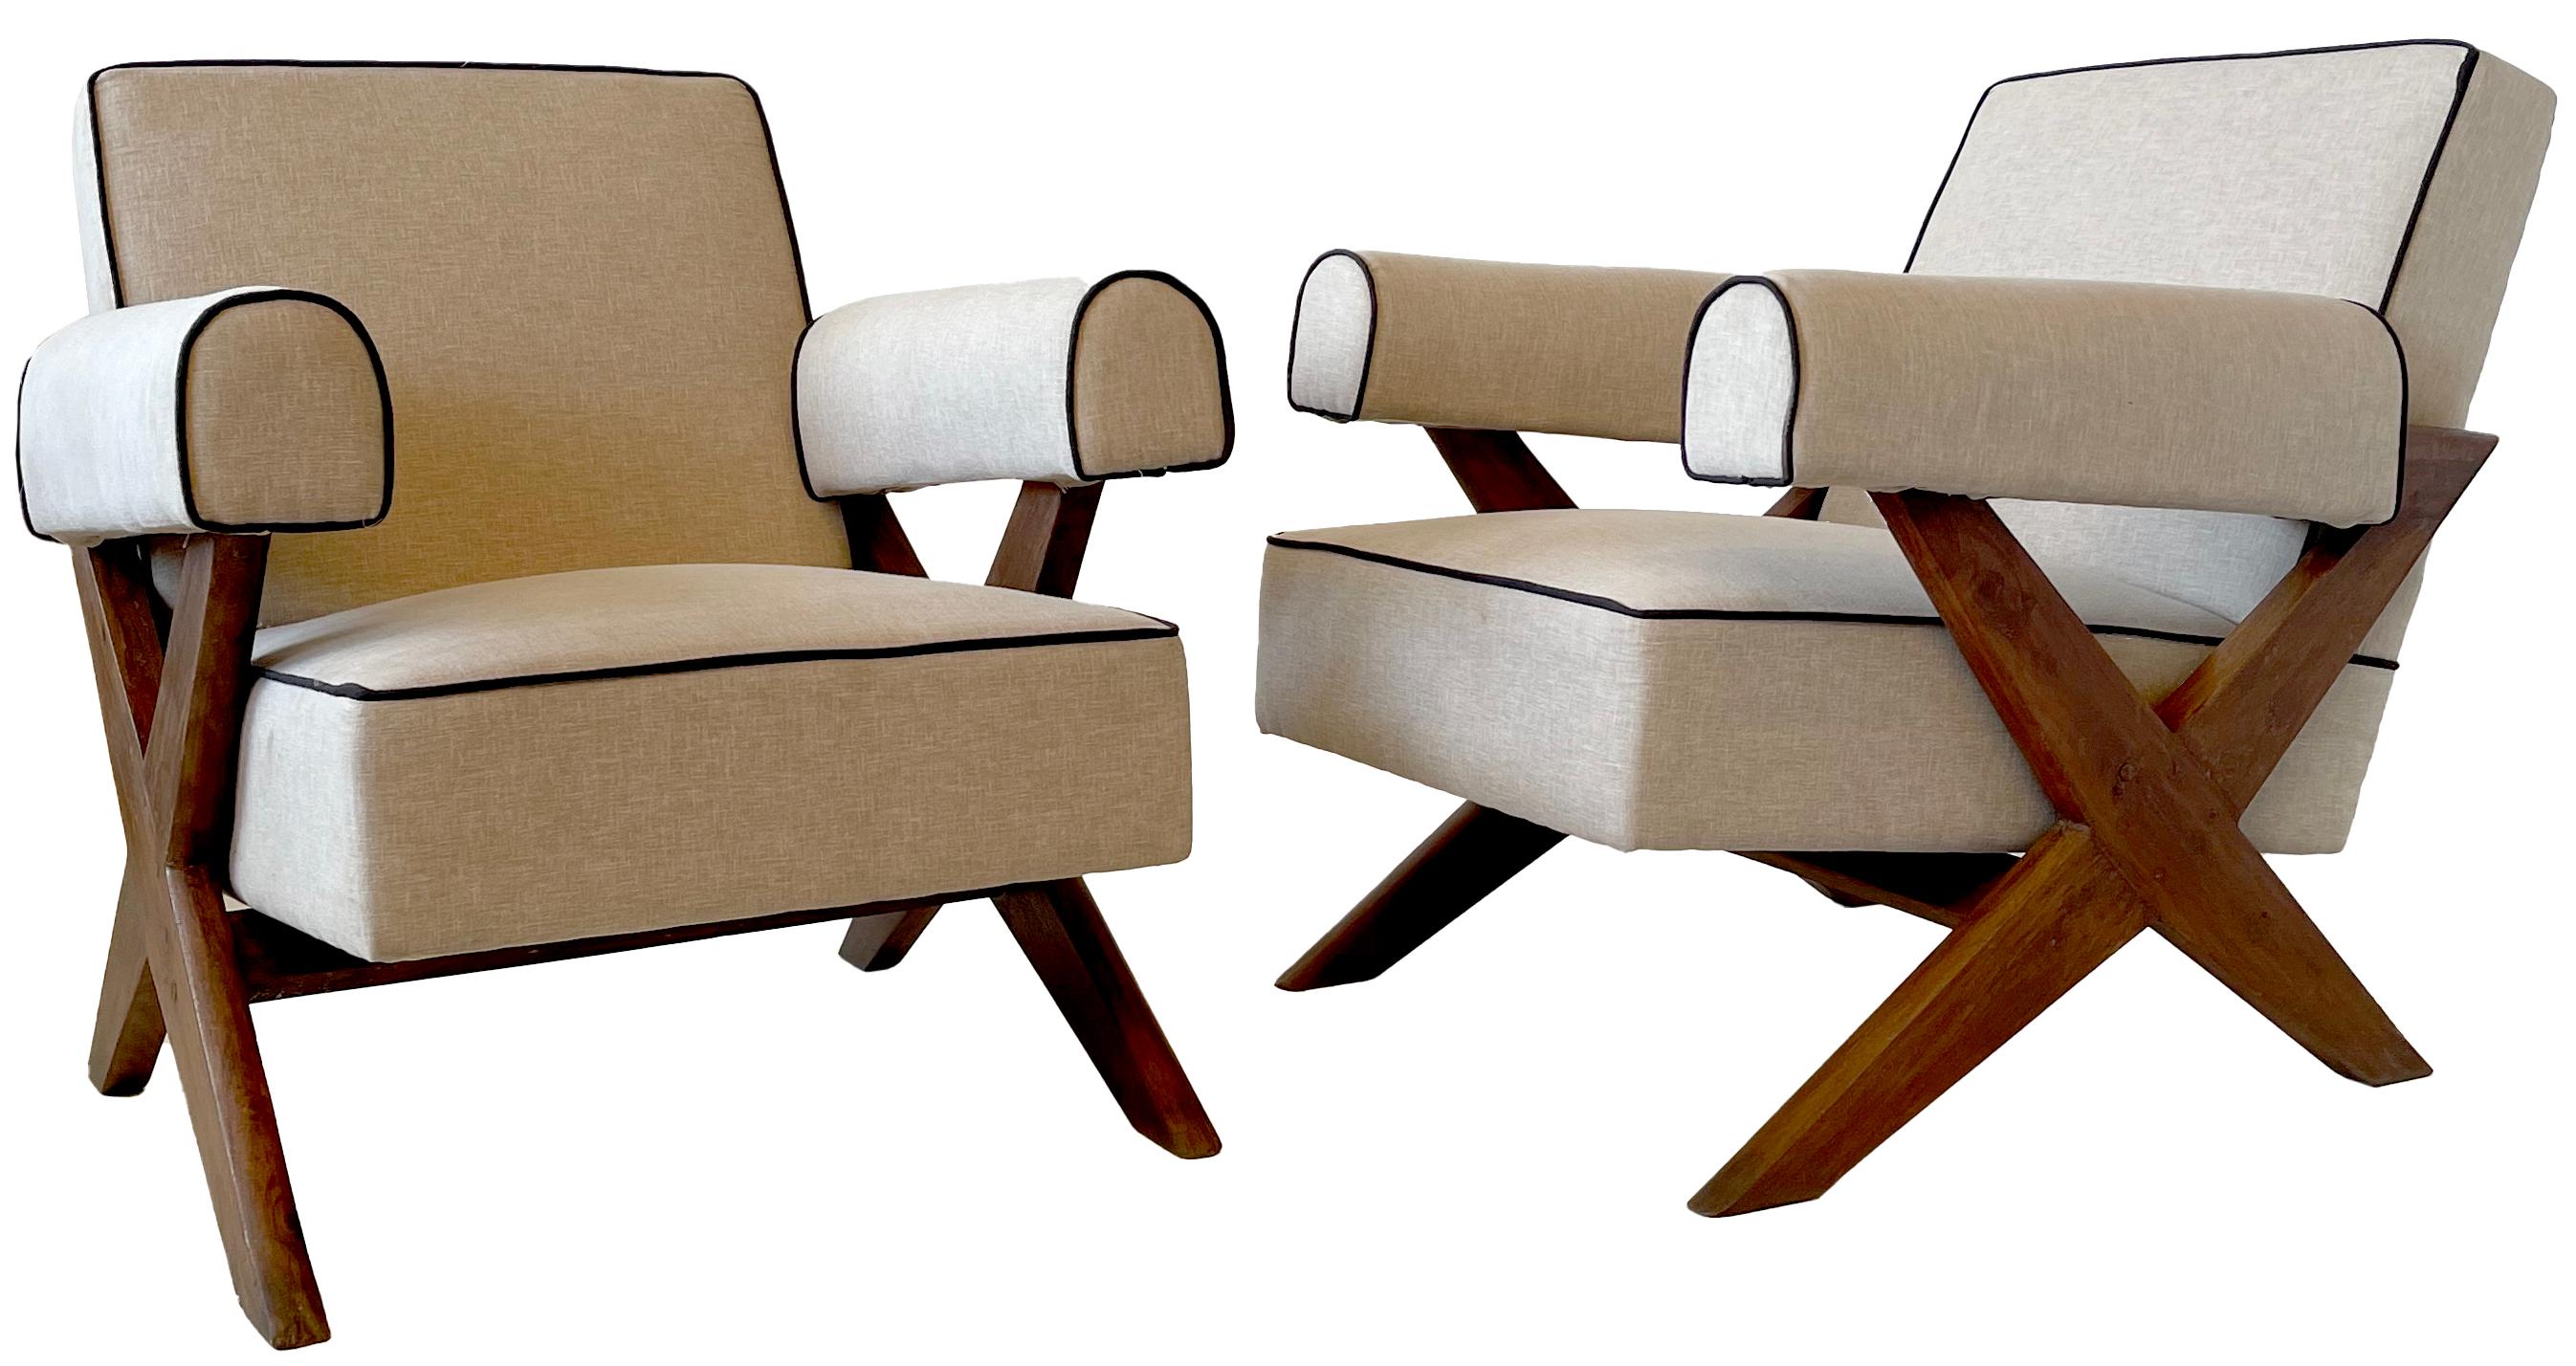 Eine echte Rarität ist ein passendes Paar der seltenen gepolsterten Sessel mit gekreuzten Beinen Pierre Jeanneret PJ-SI-48-A. 
Dieses Paar ist aus massivem Teakholz gefertigt und wurde liebevoll restauriert. Die Fugen wurden verstärkt, Löcher oder